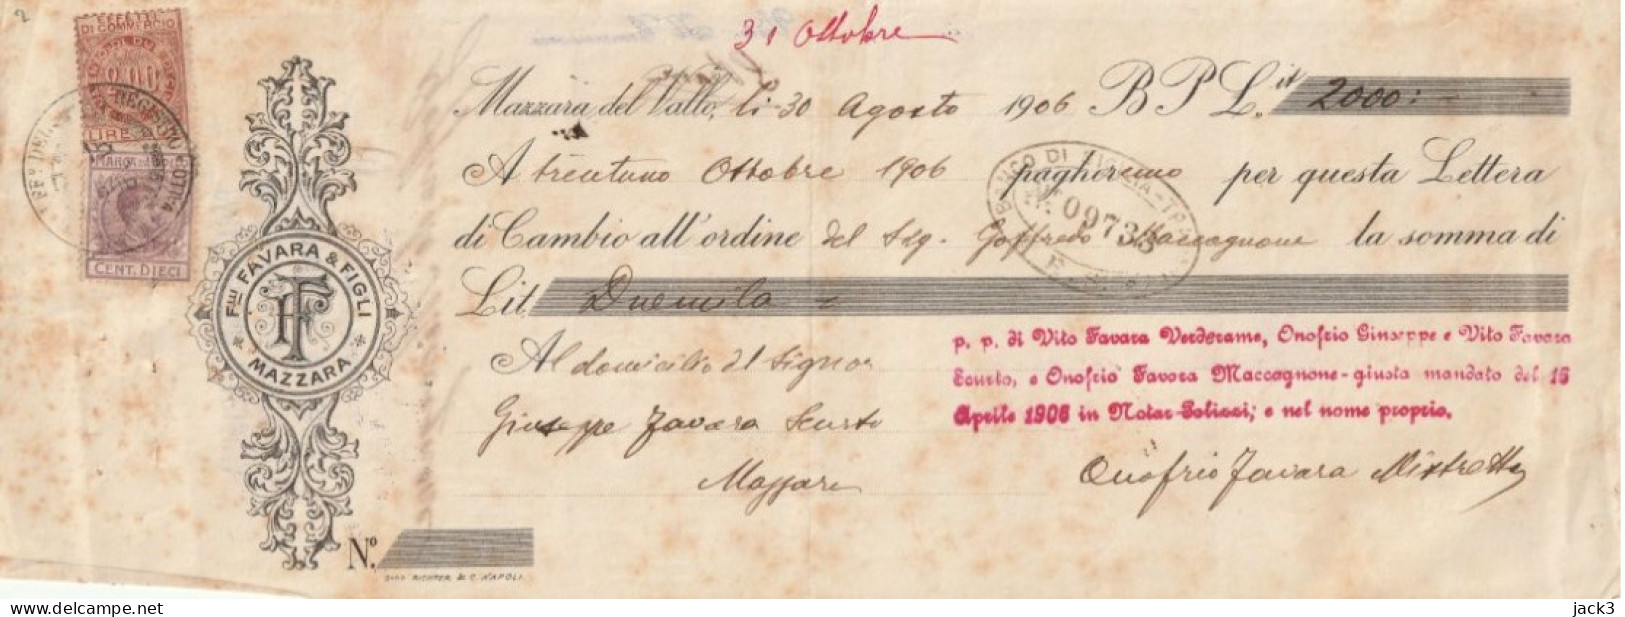 CAMBIALE - BANCO DI SICILIA - CAMBIALE CON TASSELLO PUBBLICITARIO - MAZZARA DEL VALLO  1906 - Cheques & Traveler's Cheques